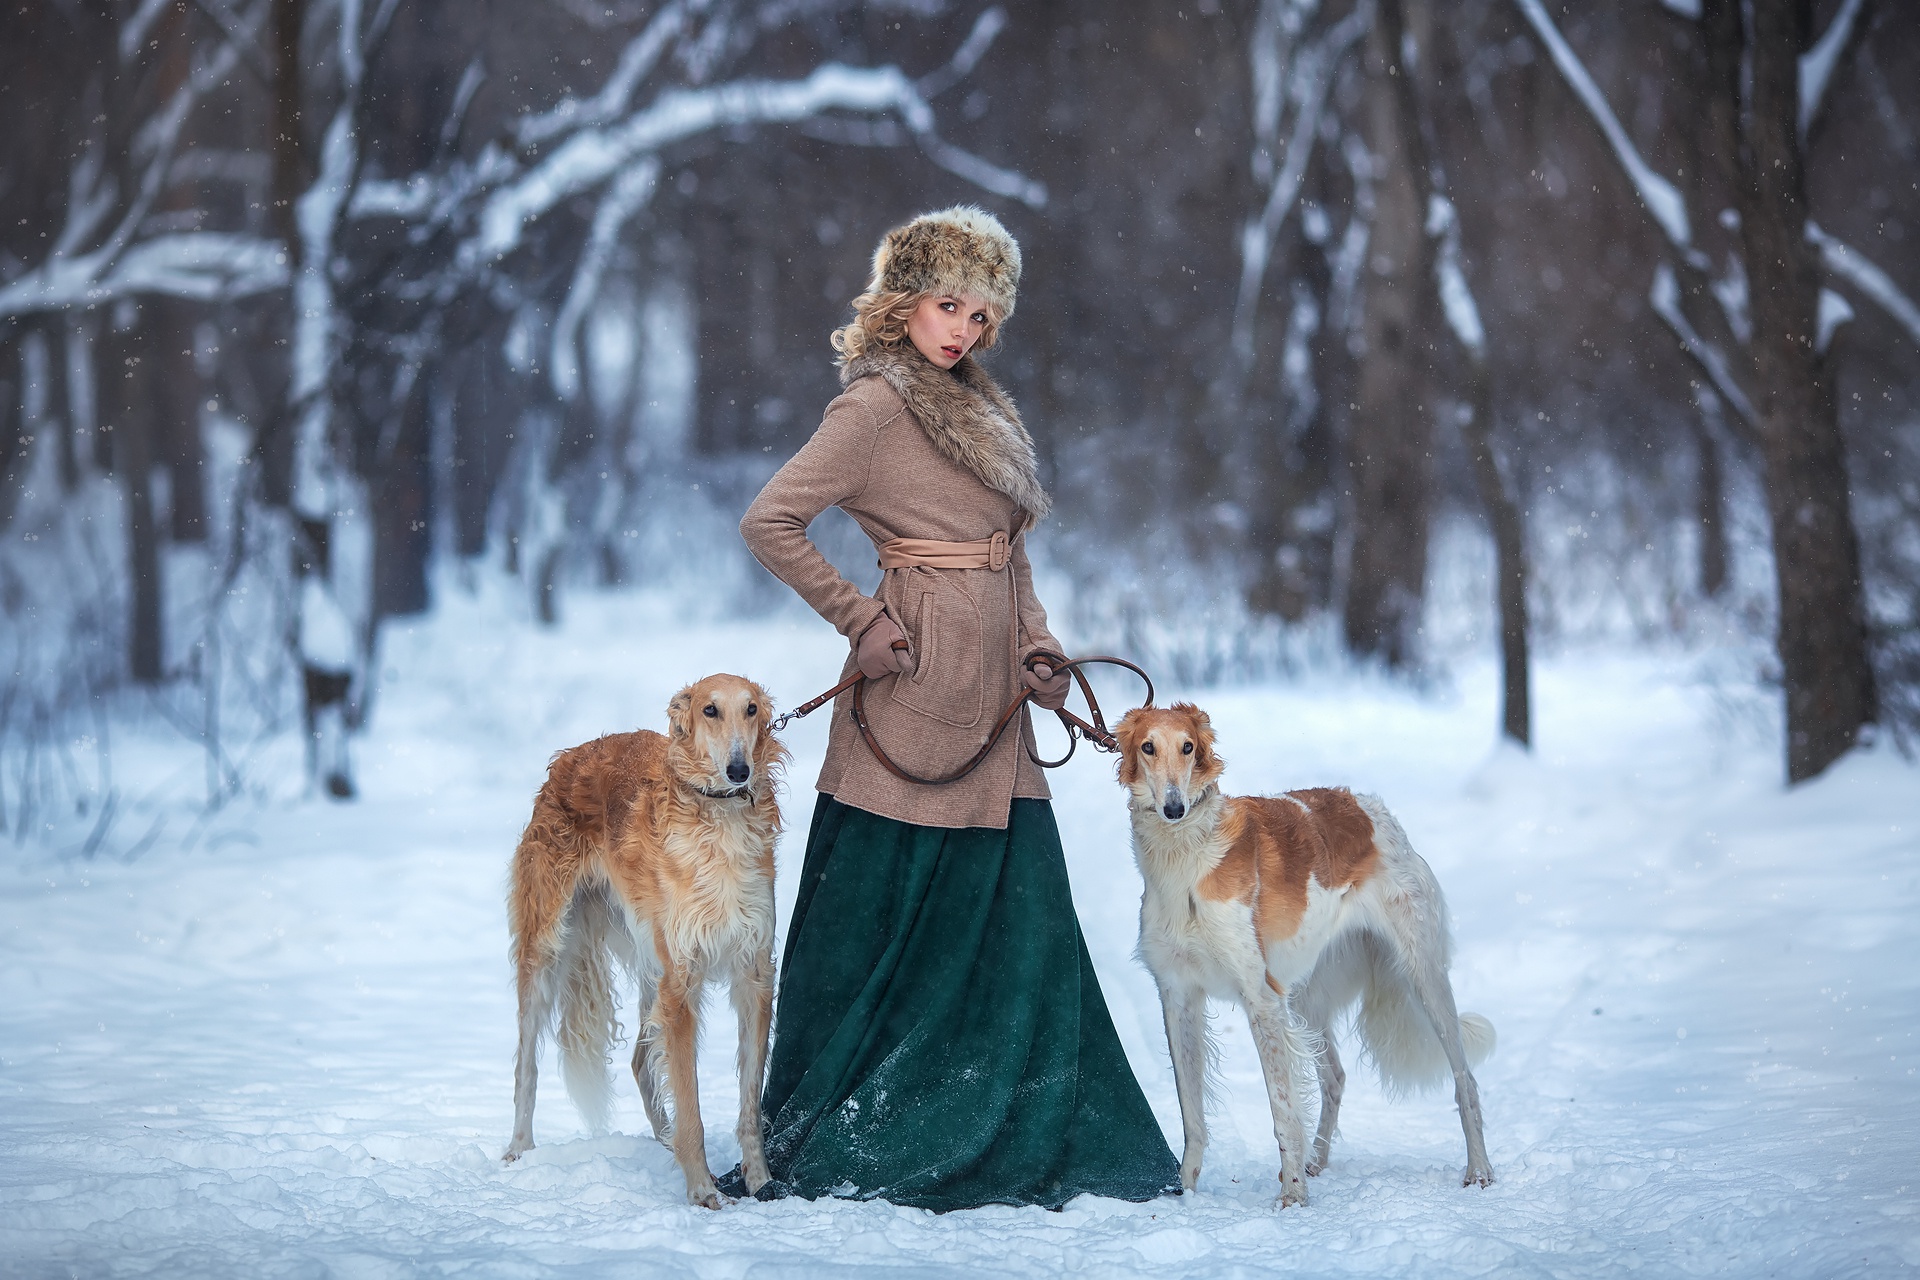 People 1920x1280 women dog winter snow animals cold mammals women outdoors fur cap green dress coats fur women with dogs dress